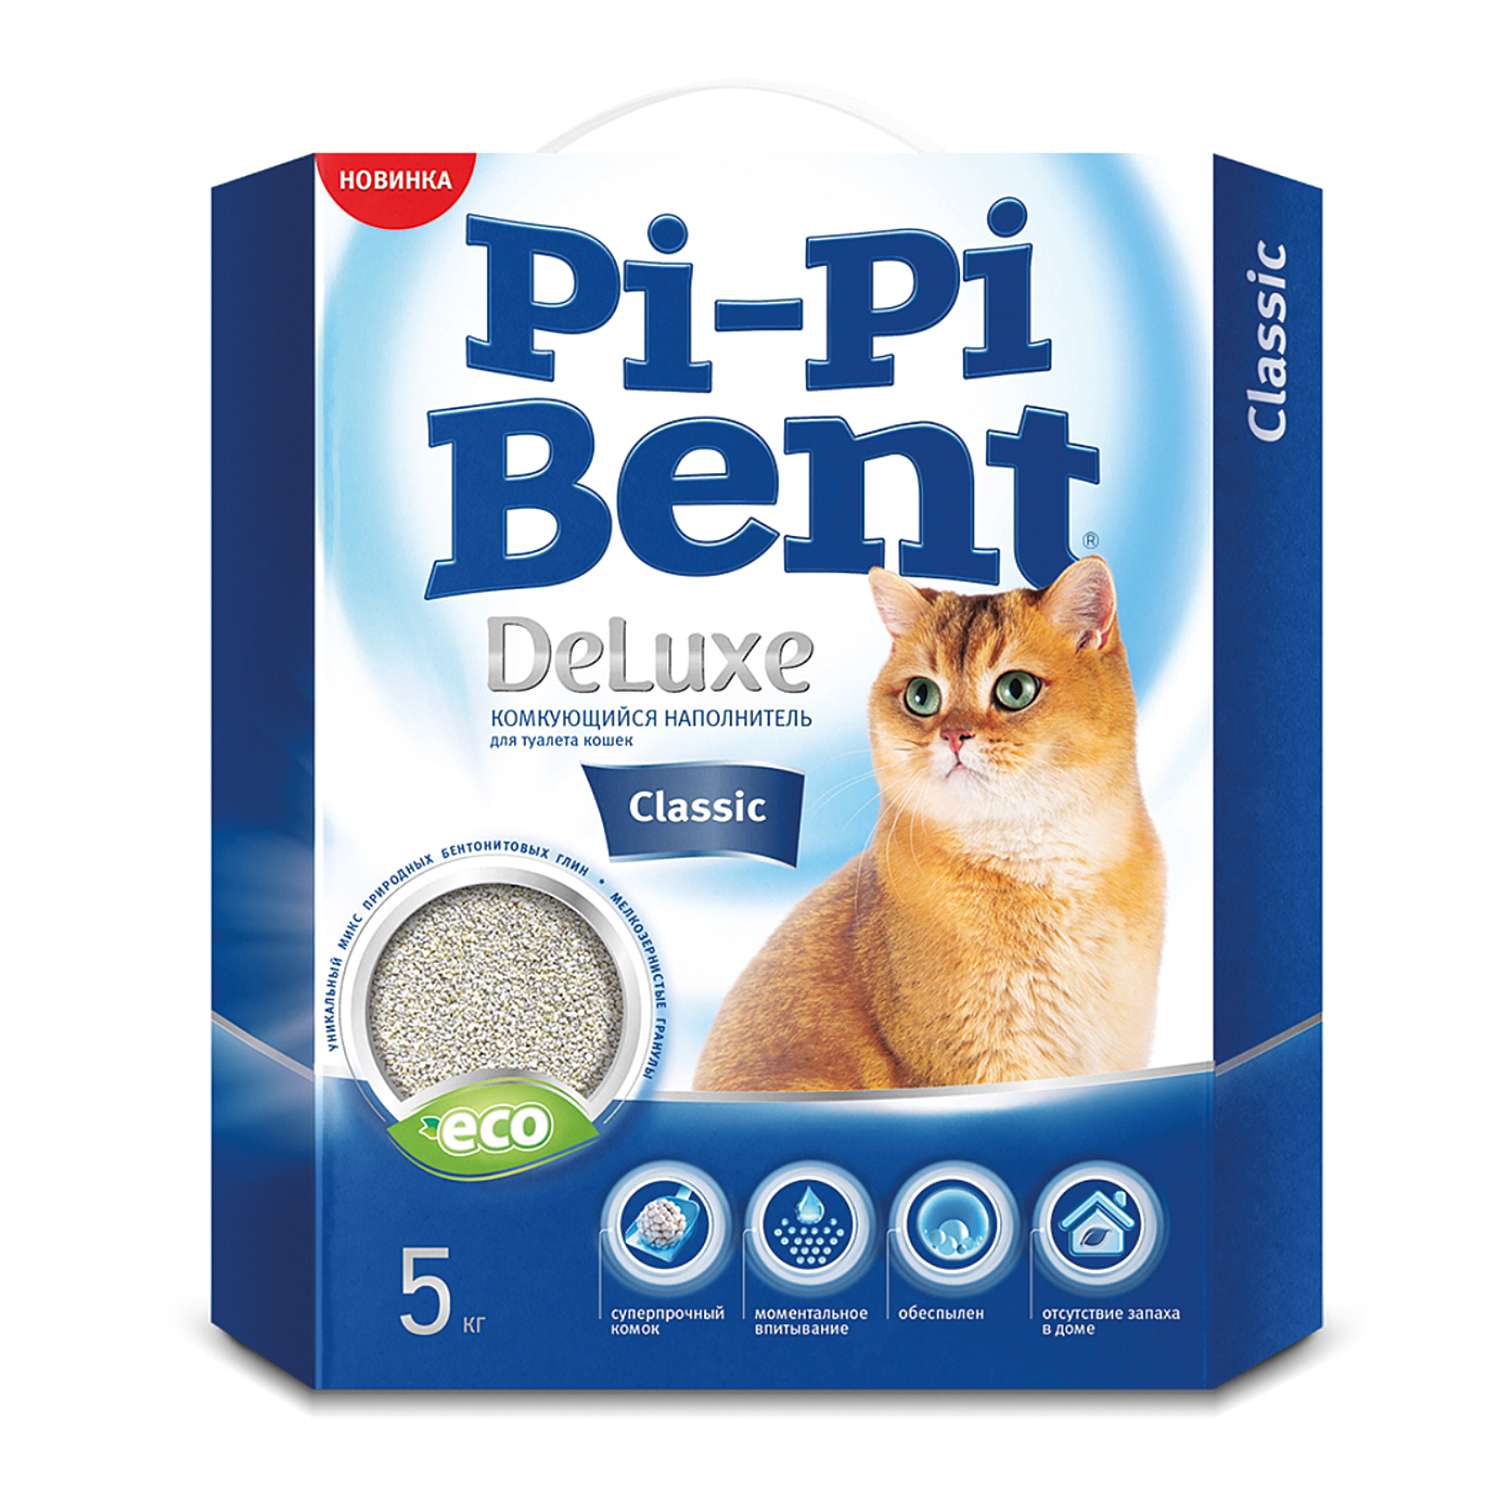 Наполнитель для кошек Pi-Pi-Bent DeLuxe Classic комкующийся без отдушки 5кг - фото 1